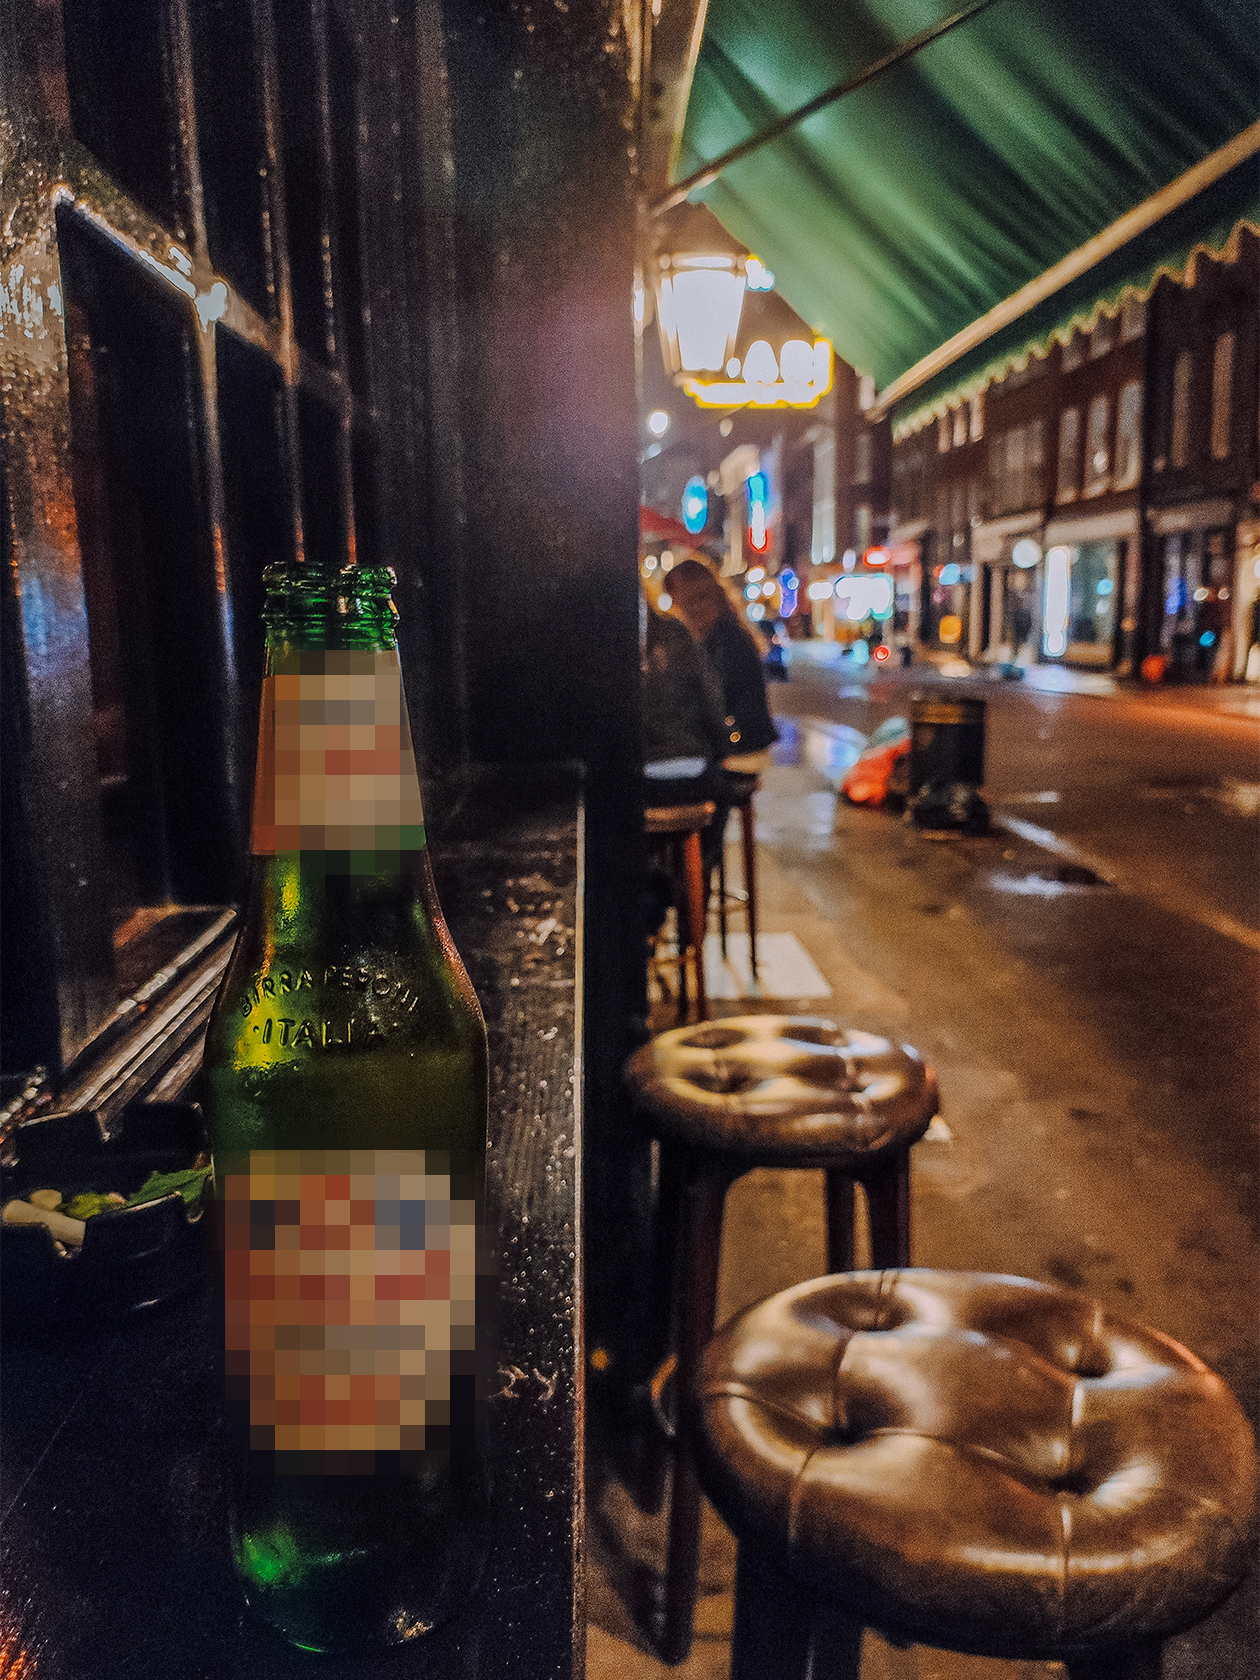 Если бы раньше мне кто⁠-⁠нибудь сказал, что найти безалкогольное пиво в Лондоне будет проблемой, никогда бы не поверила